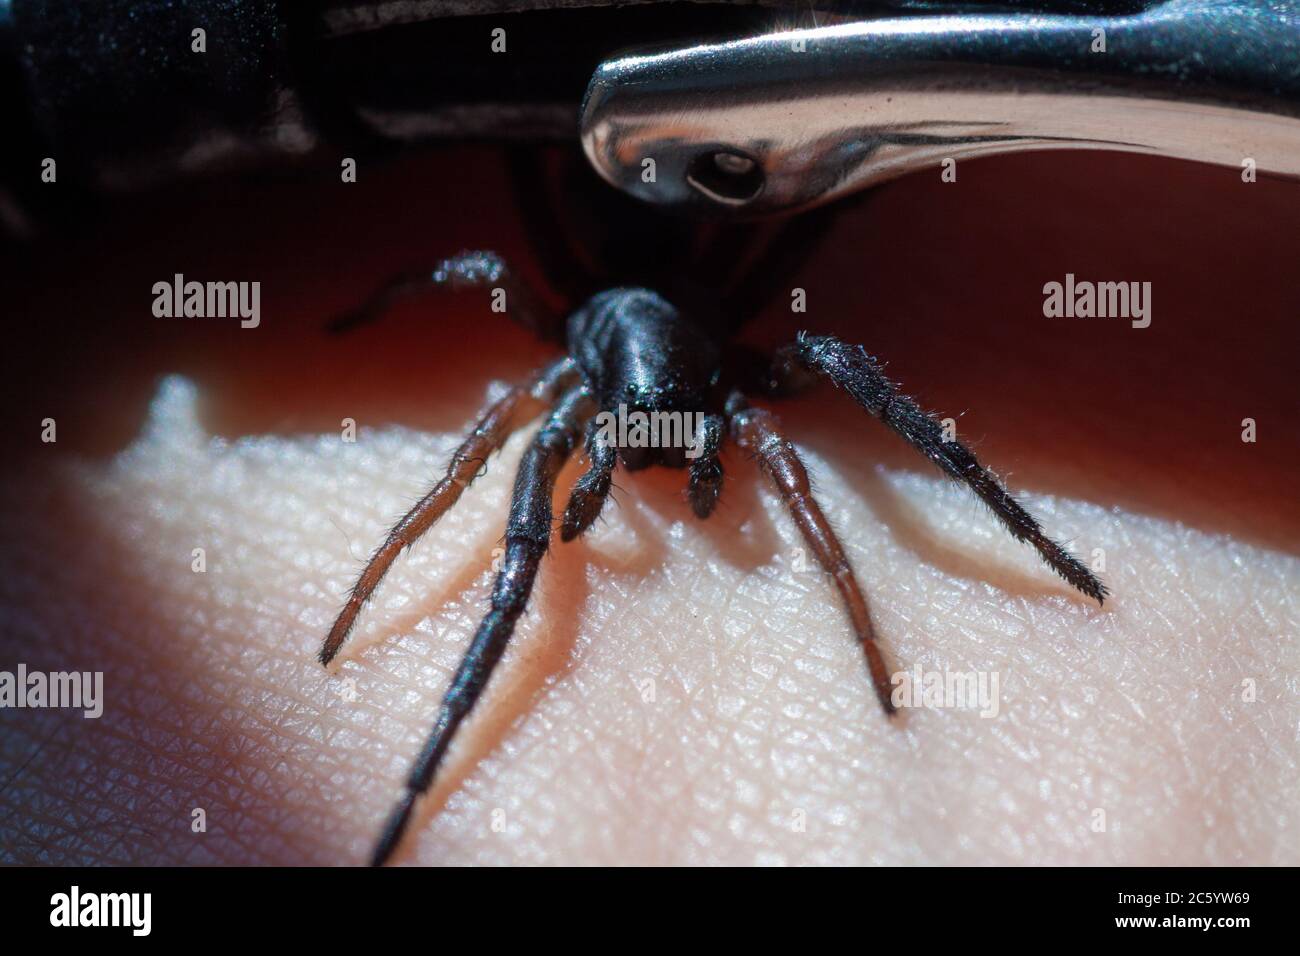 Eine kleine giftige Spinne auf dem Arm eines Mannes beißt die Haut und  spritzt Gift ein Stockfotografie - Alamy